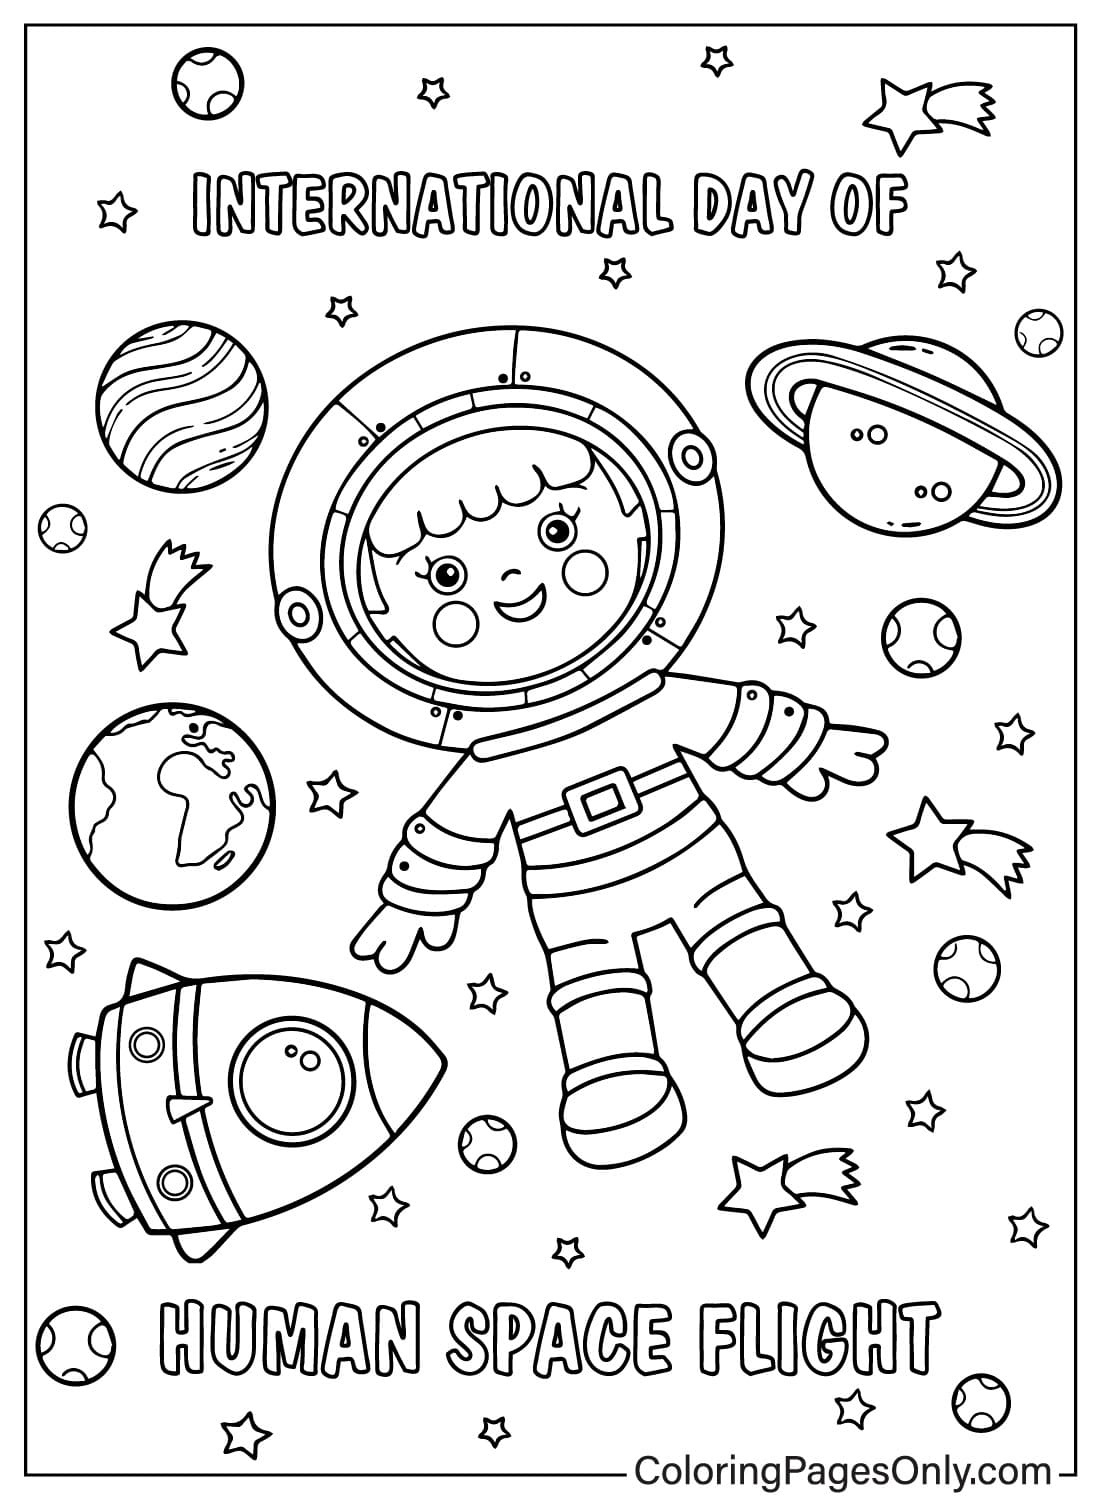 Dia Internacional do Voo Espacial Humano em cores from Dia Internacional do Voo Espacial Humano